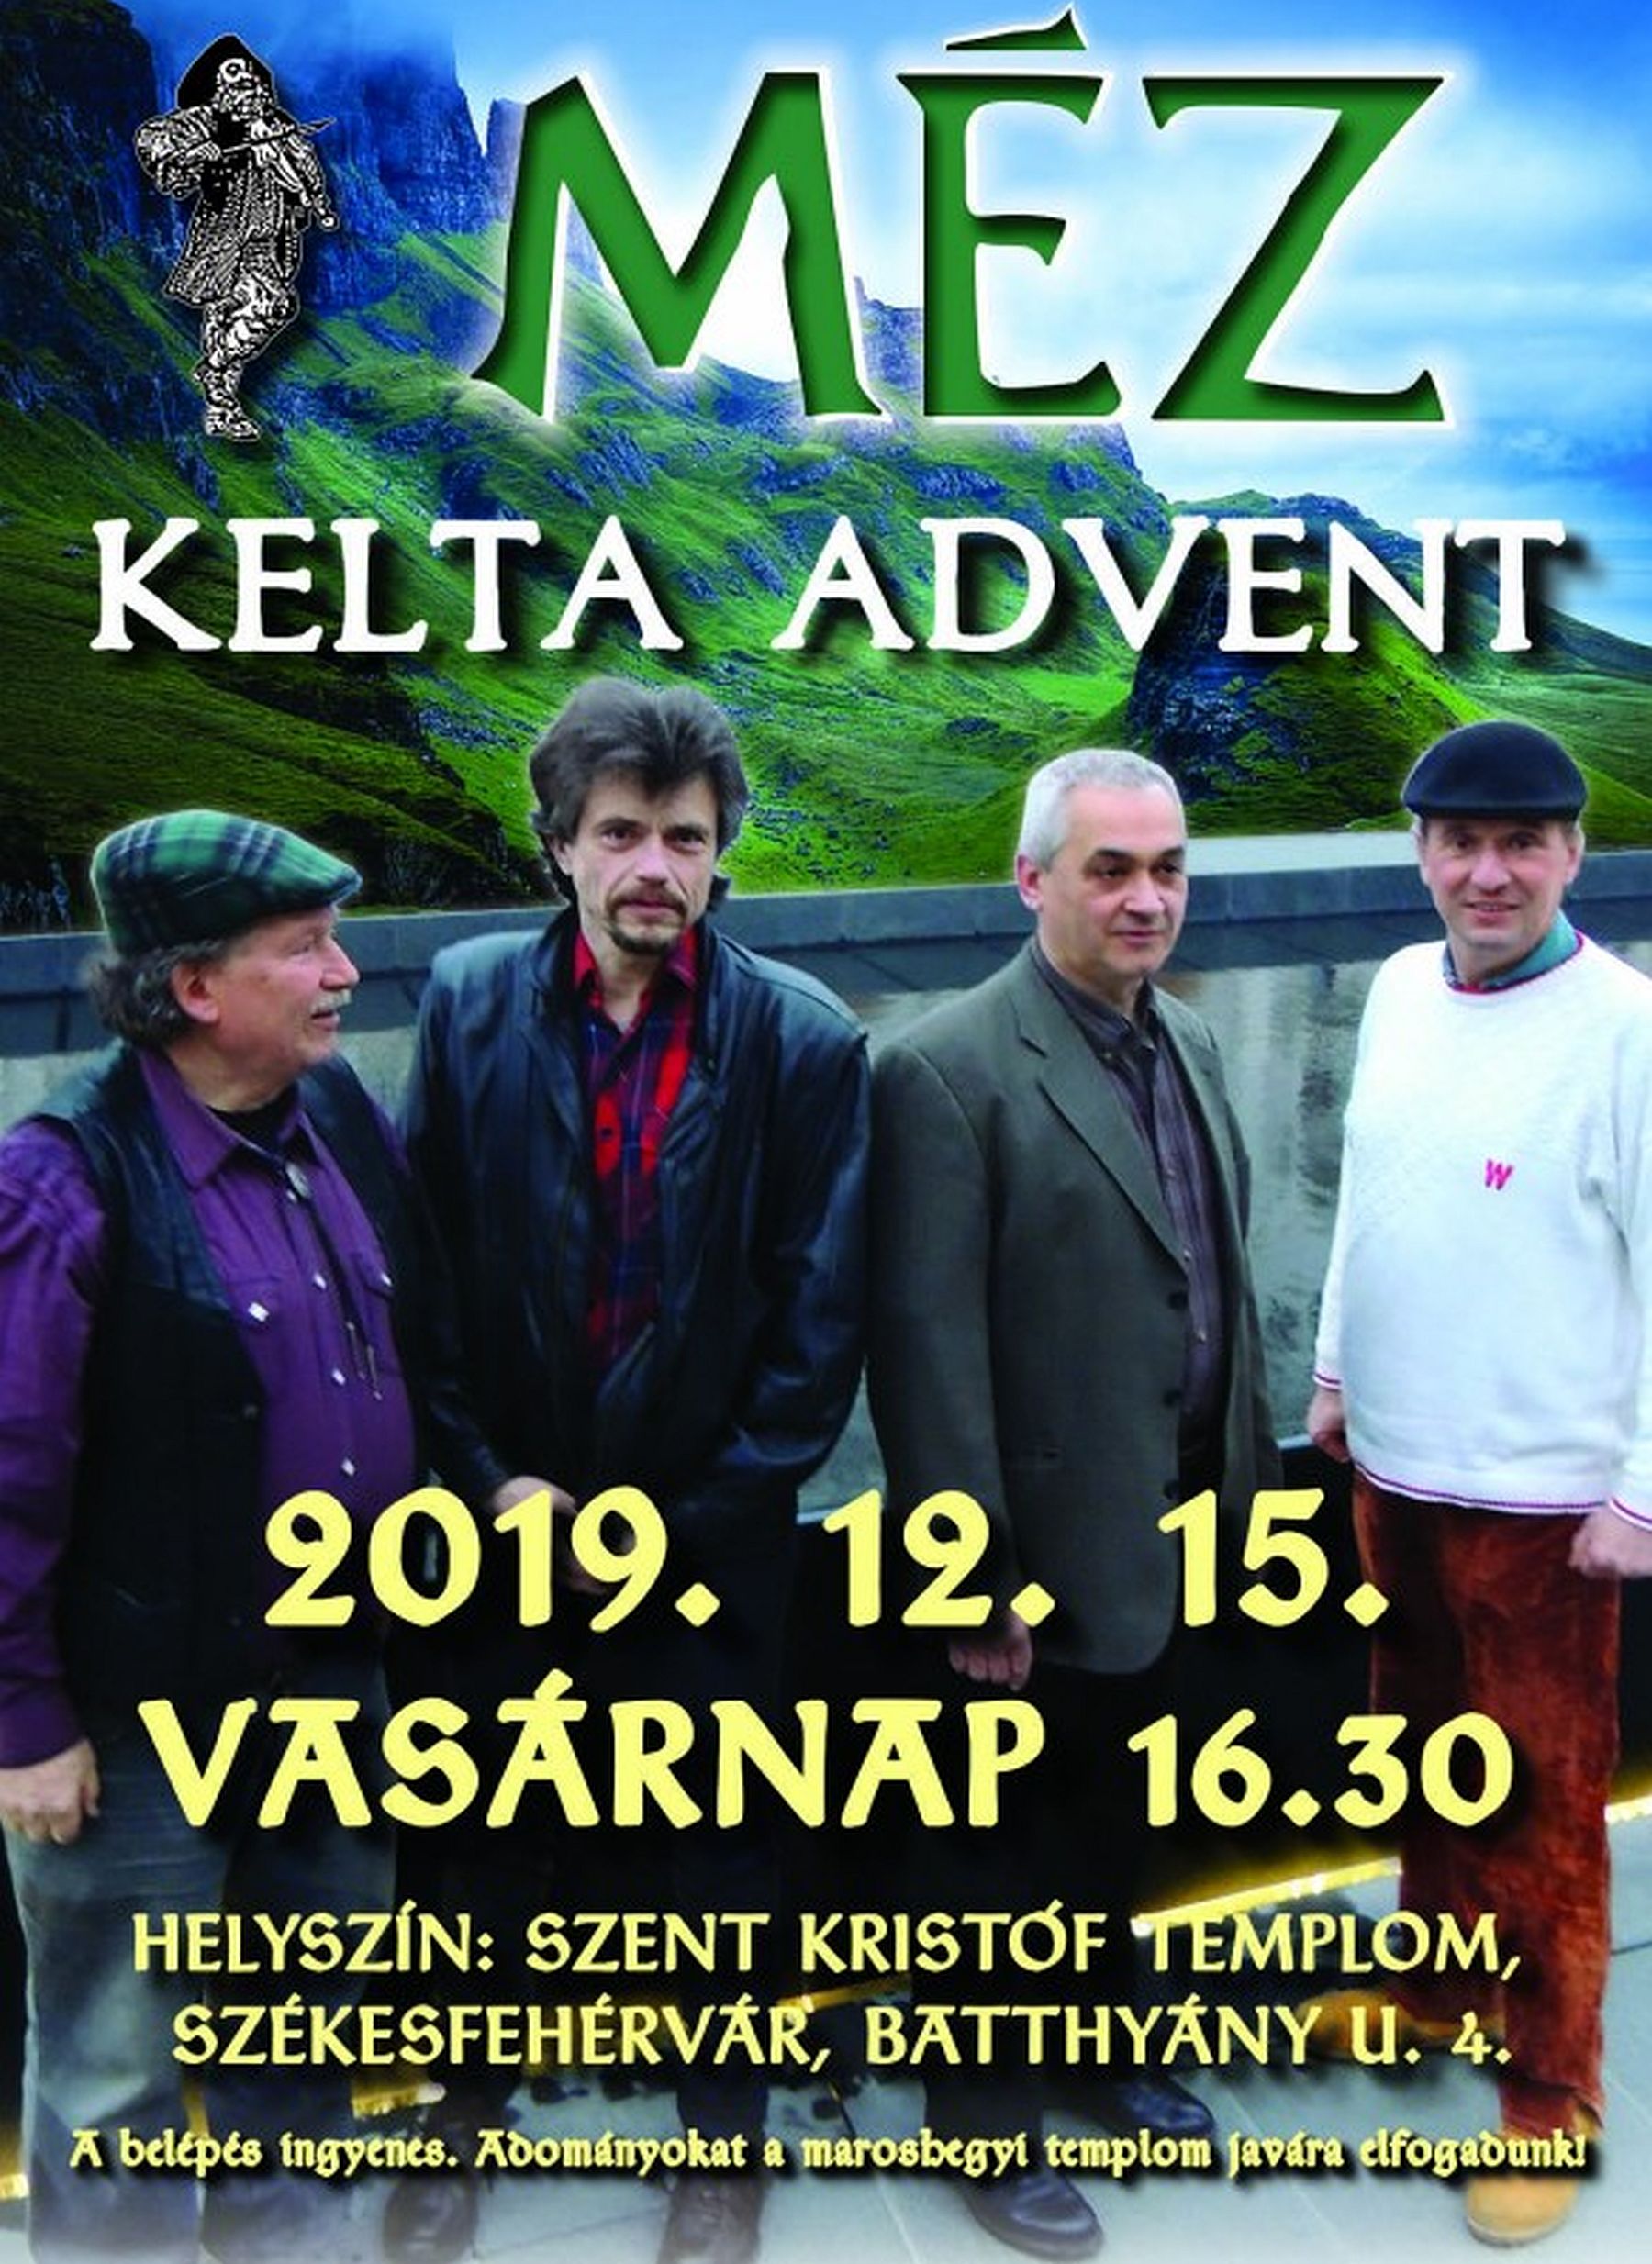 Kelta advent - a M.É.Z. együttes koncertje vasárnap a Maroshegyi templomban